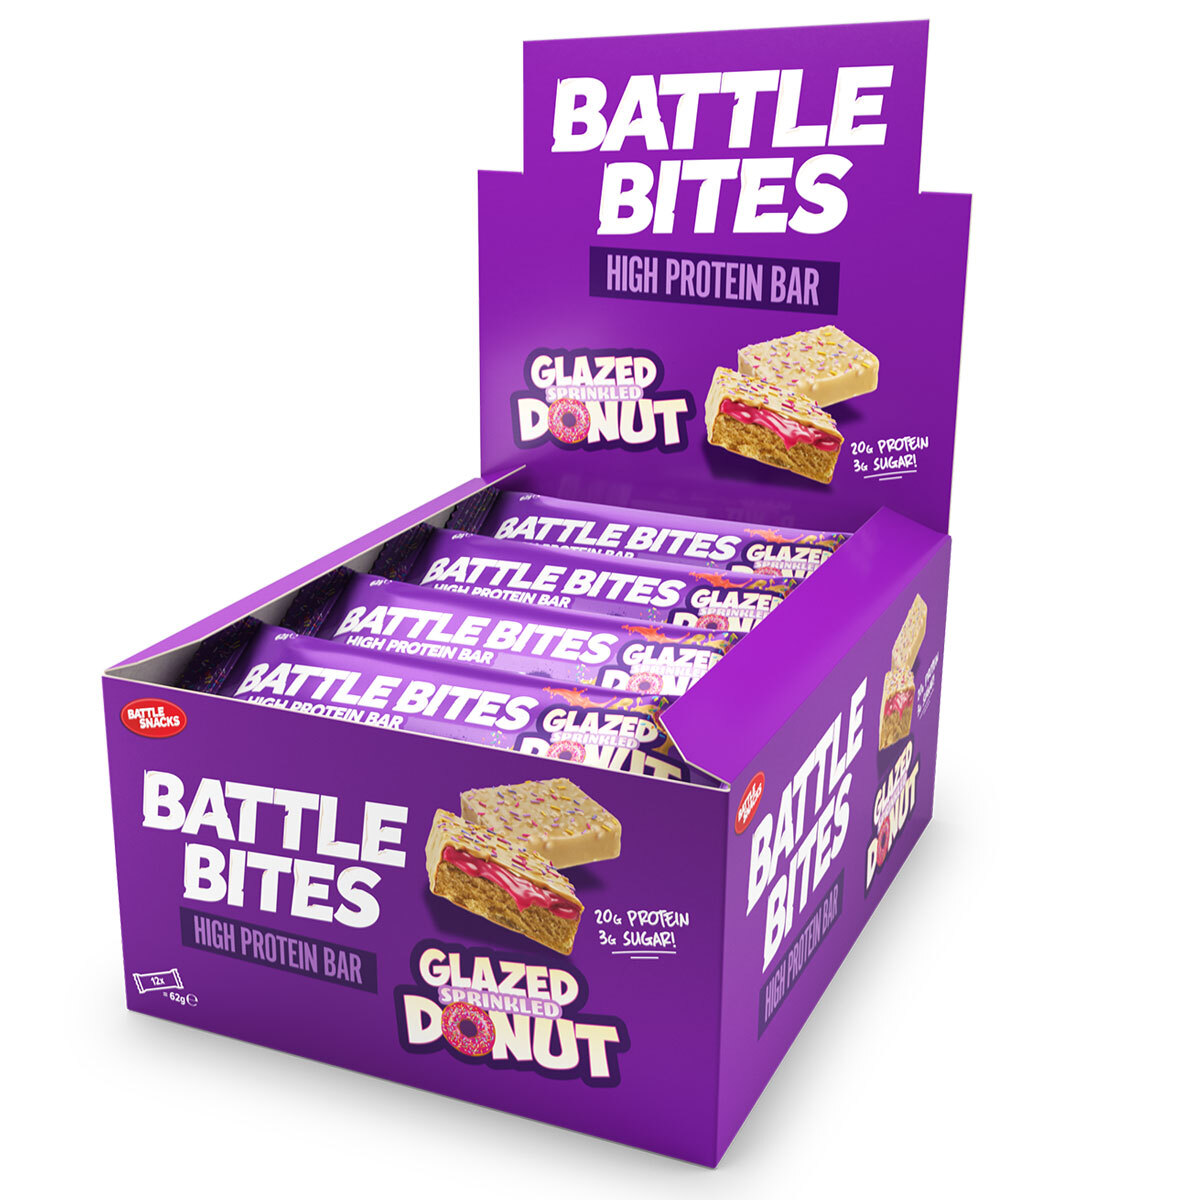 Battle Bites Glazed Sprinkled Doughnut Flavour Protein Bars, 12 x 62g